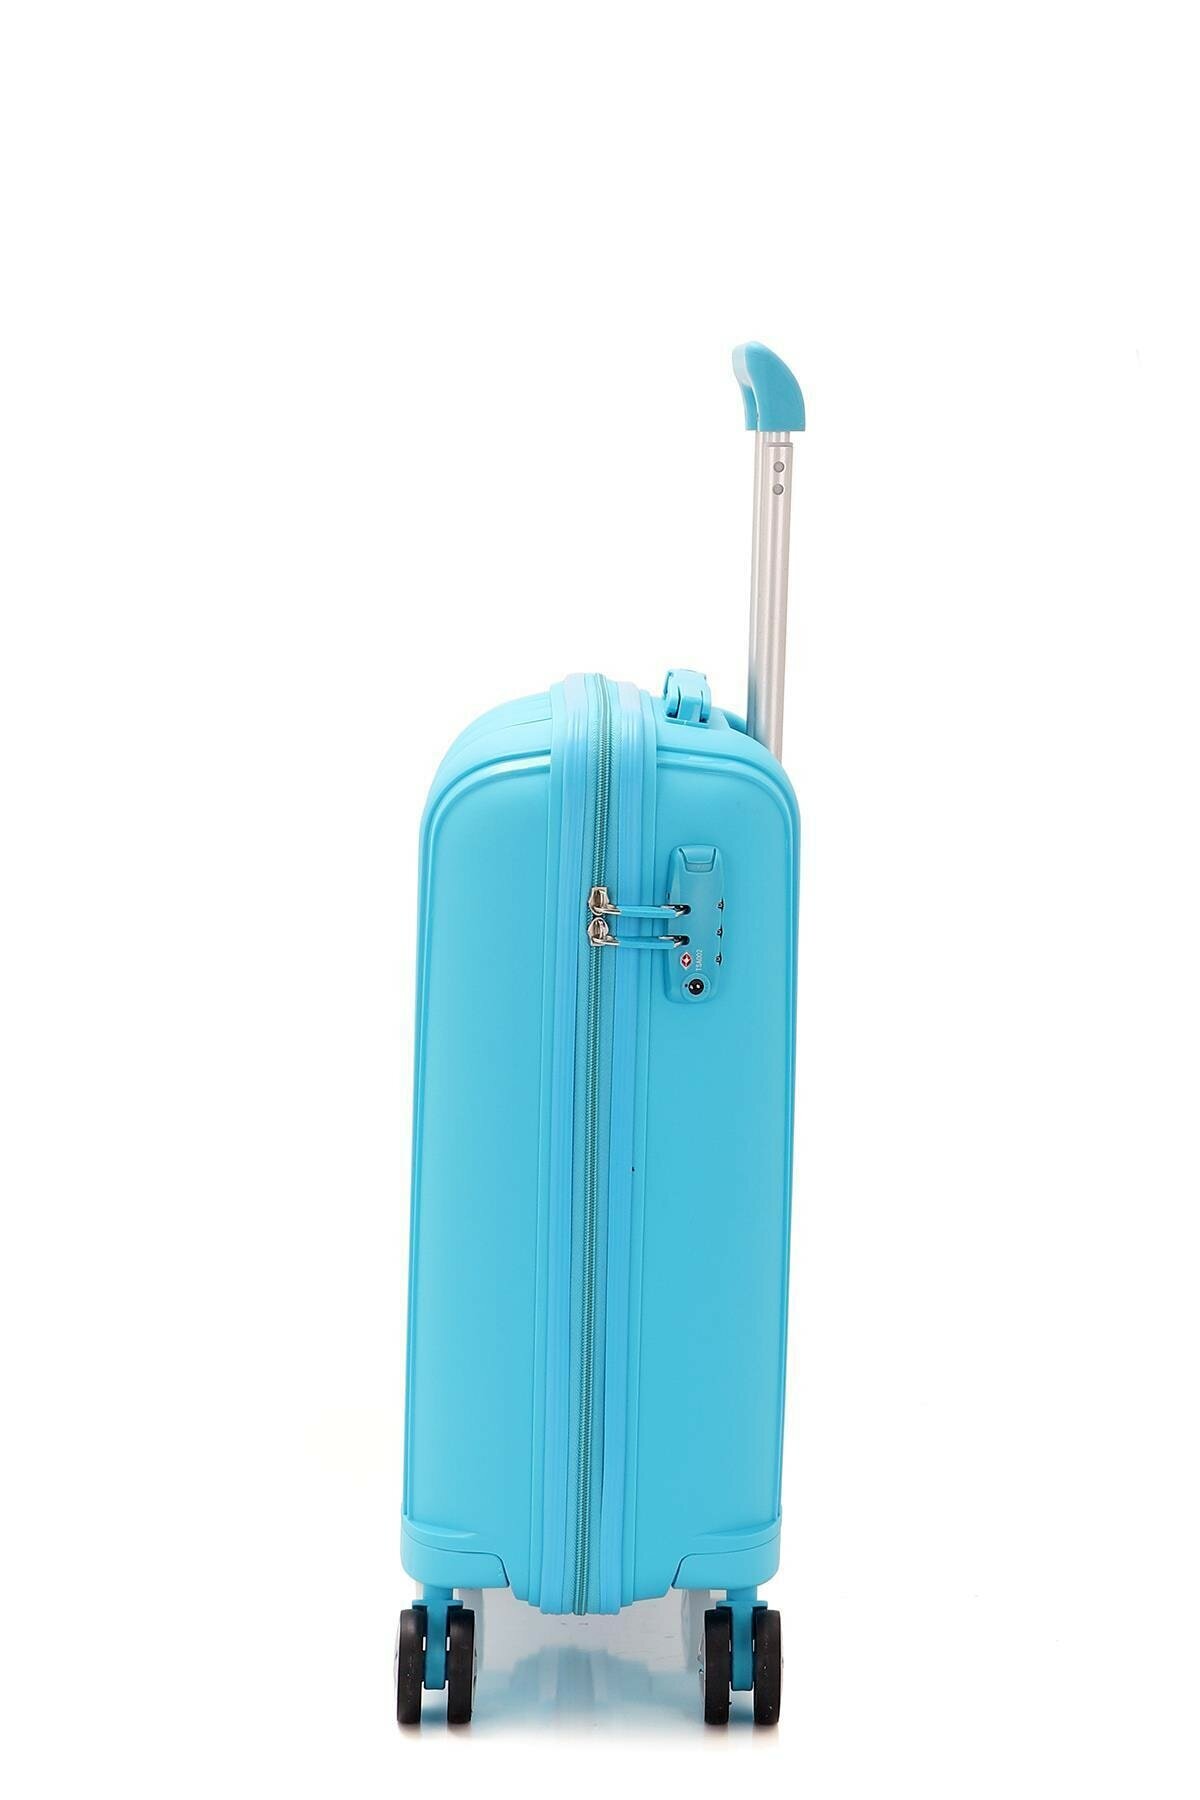 Маленький чемодан для ручьной клади из полипропилена MCS V305 S L.BLUE! Для 8-10 кг! - 4